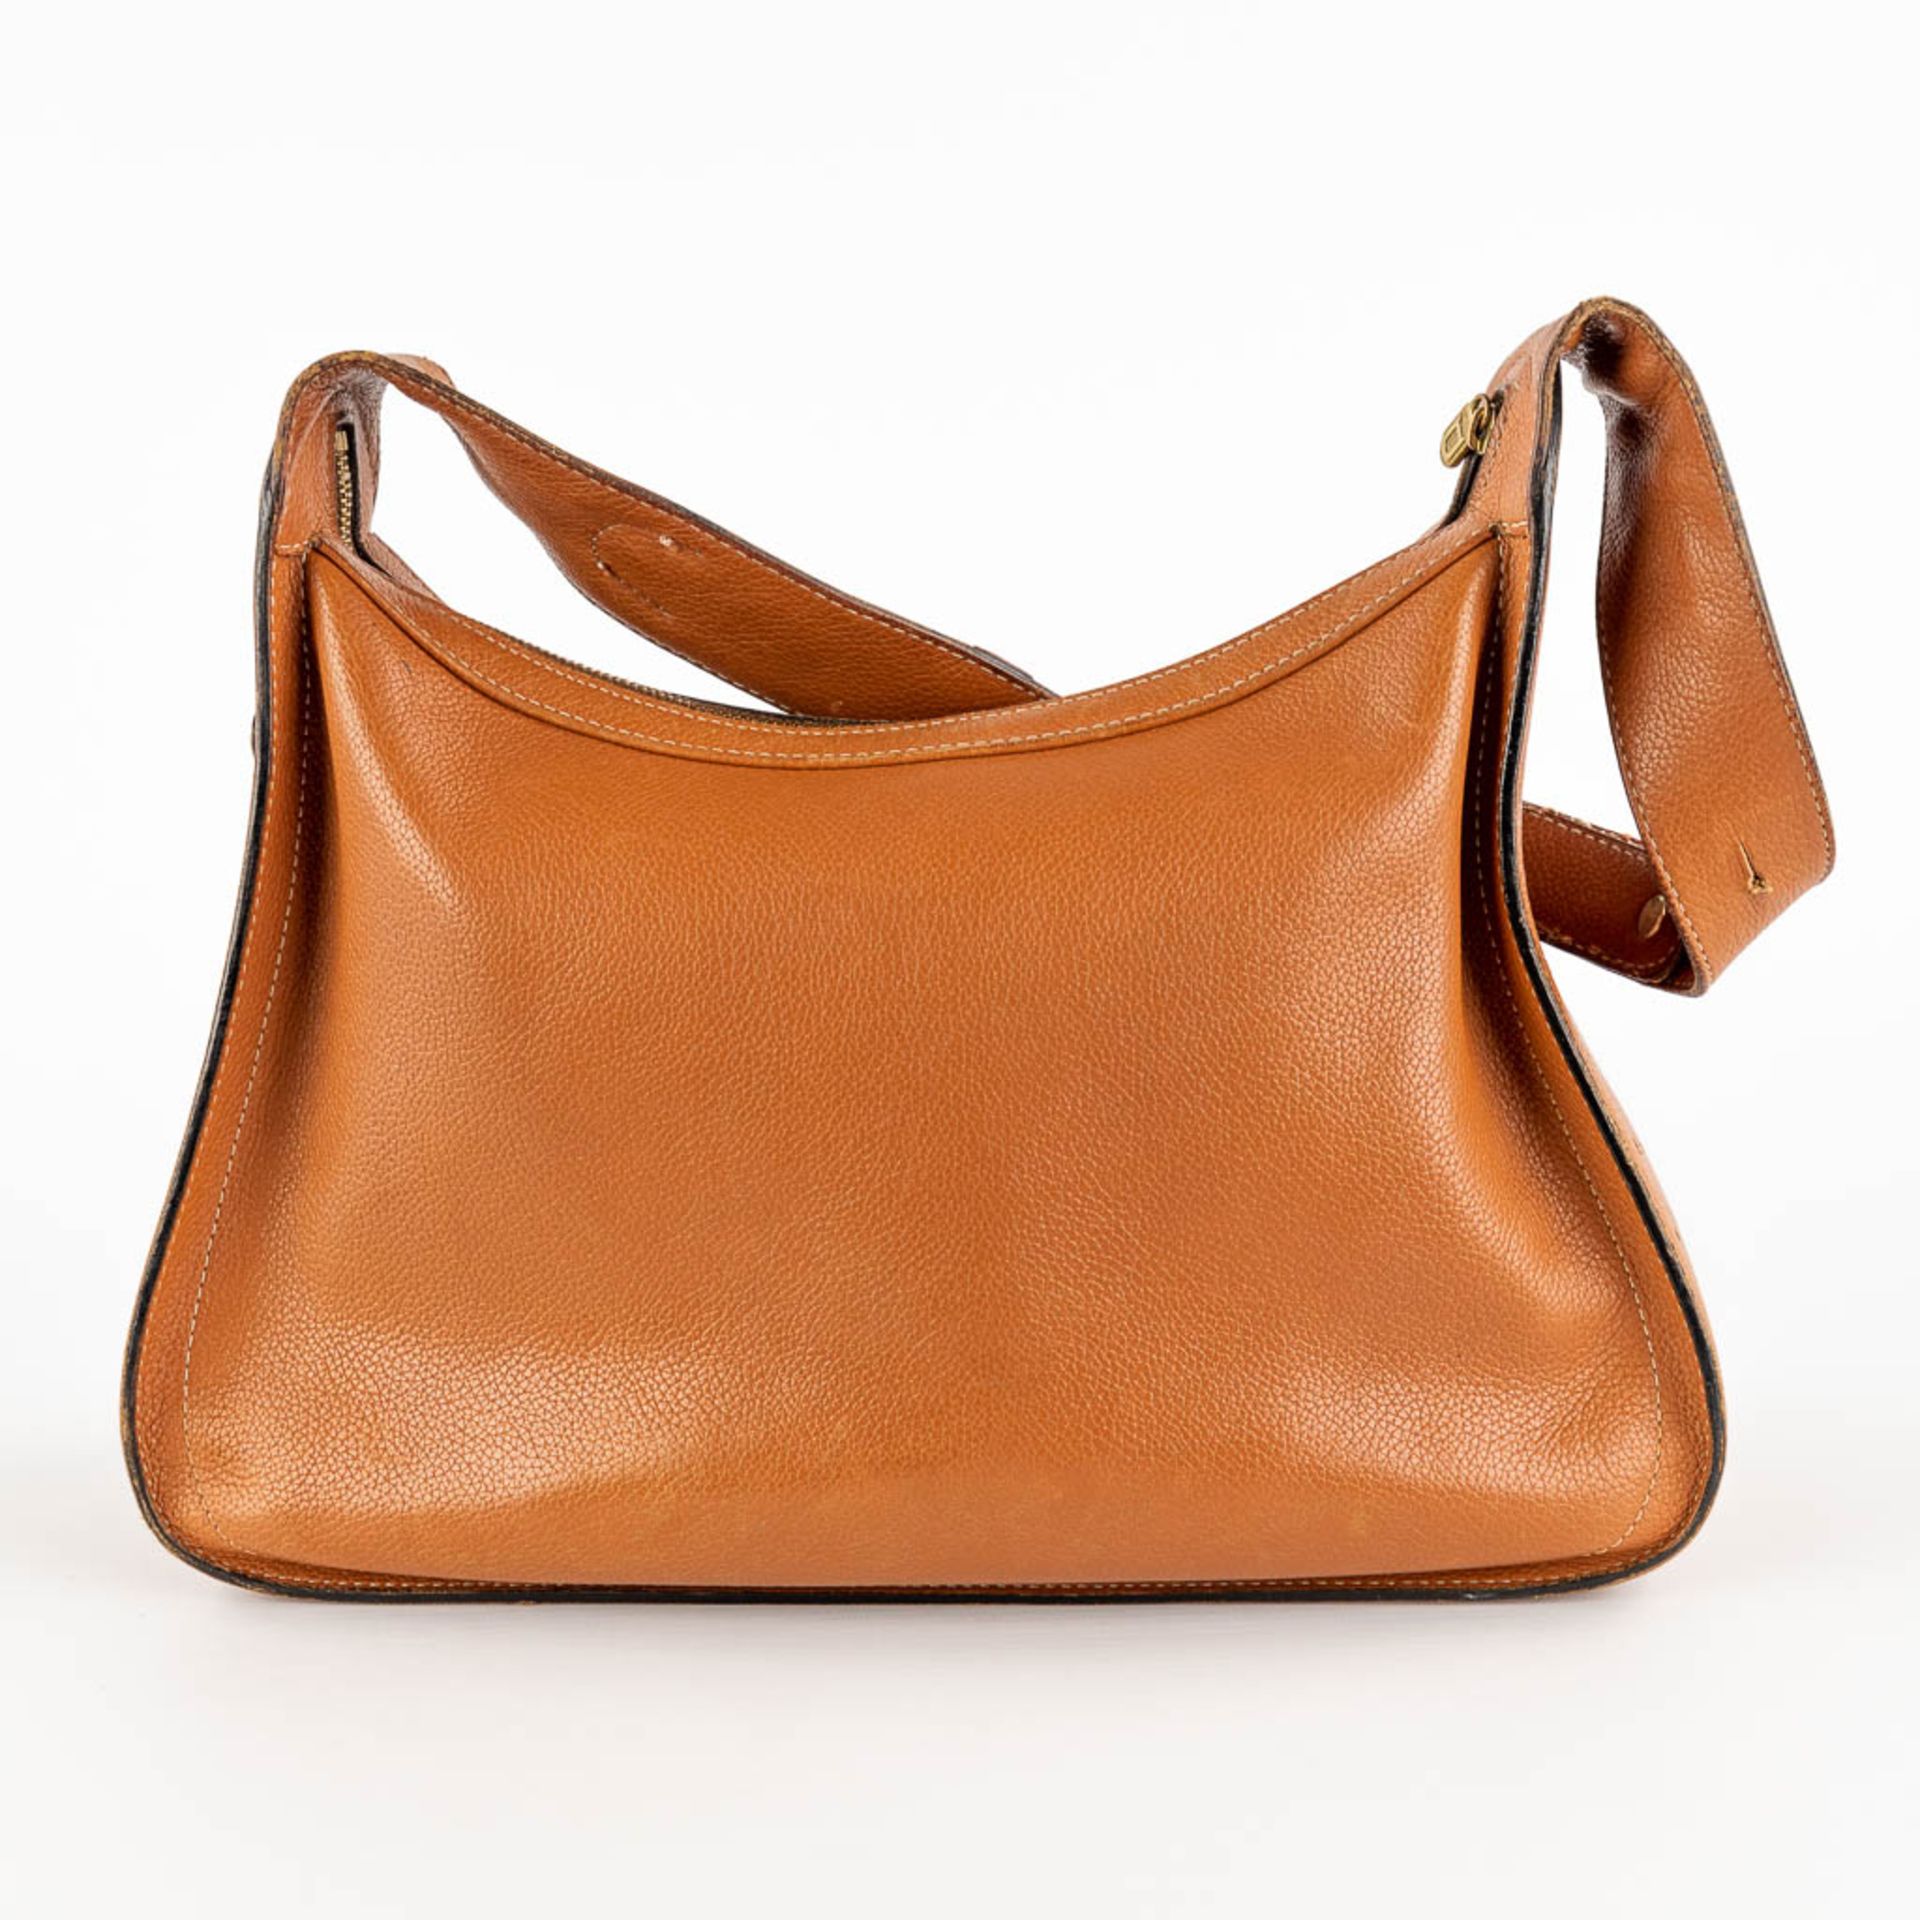 Delvaux, Pensée, a handbag made of brown leather. (W:24 x H:32 cm) - Bild 4 aus 18